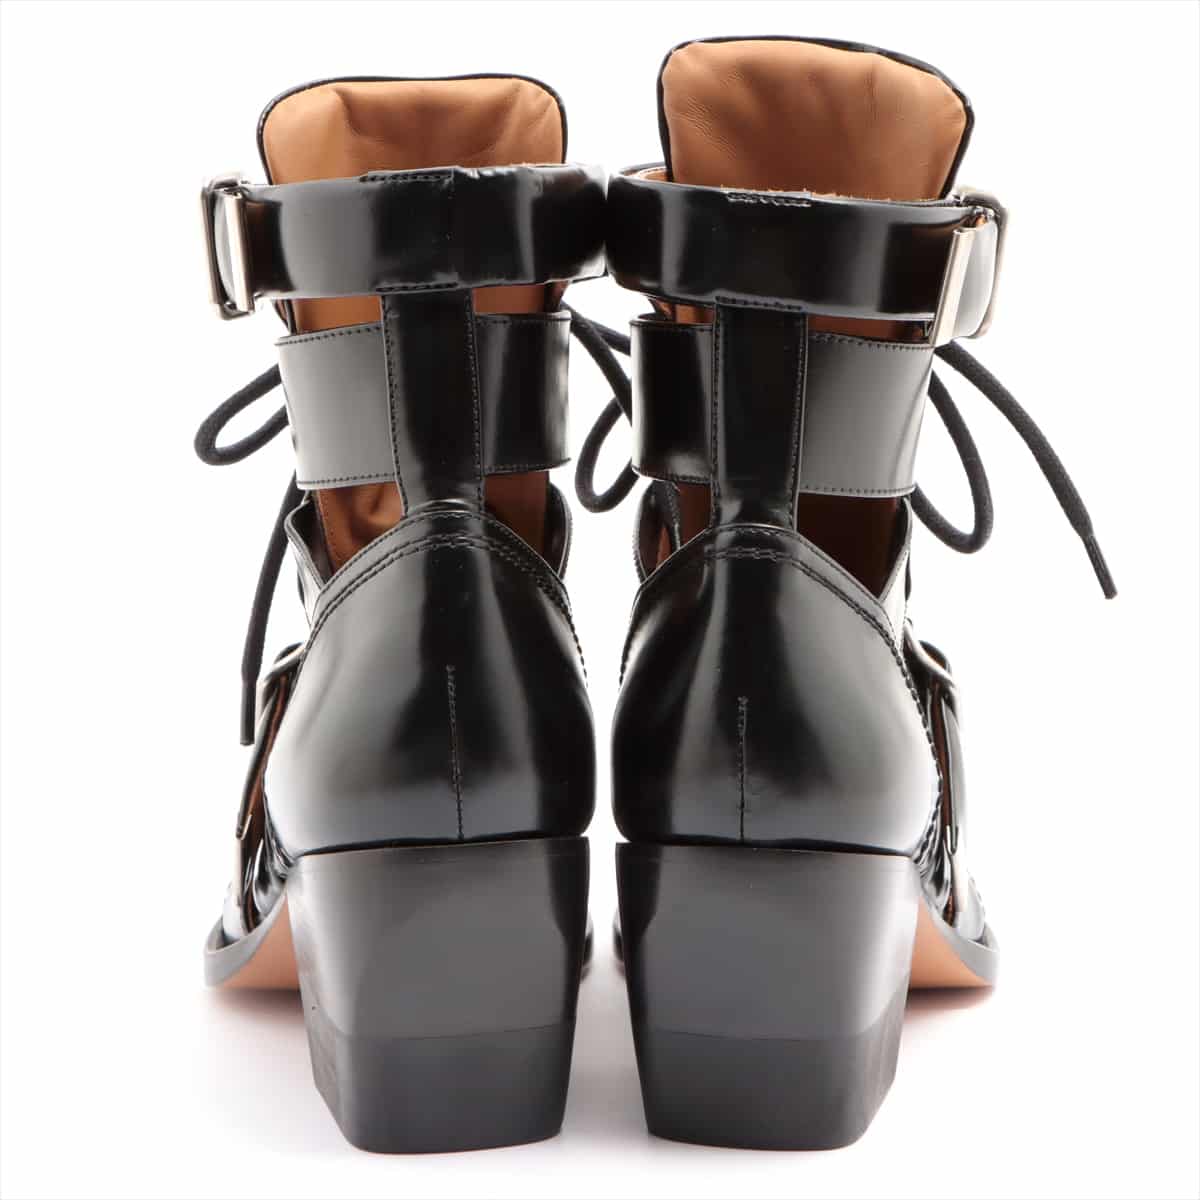 Chloe RYLEE Leather Boots 38.5 Ladies' Black